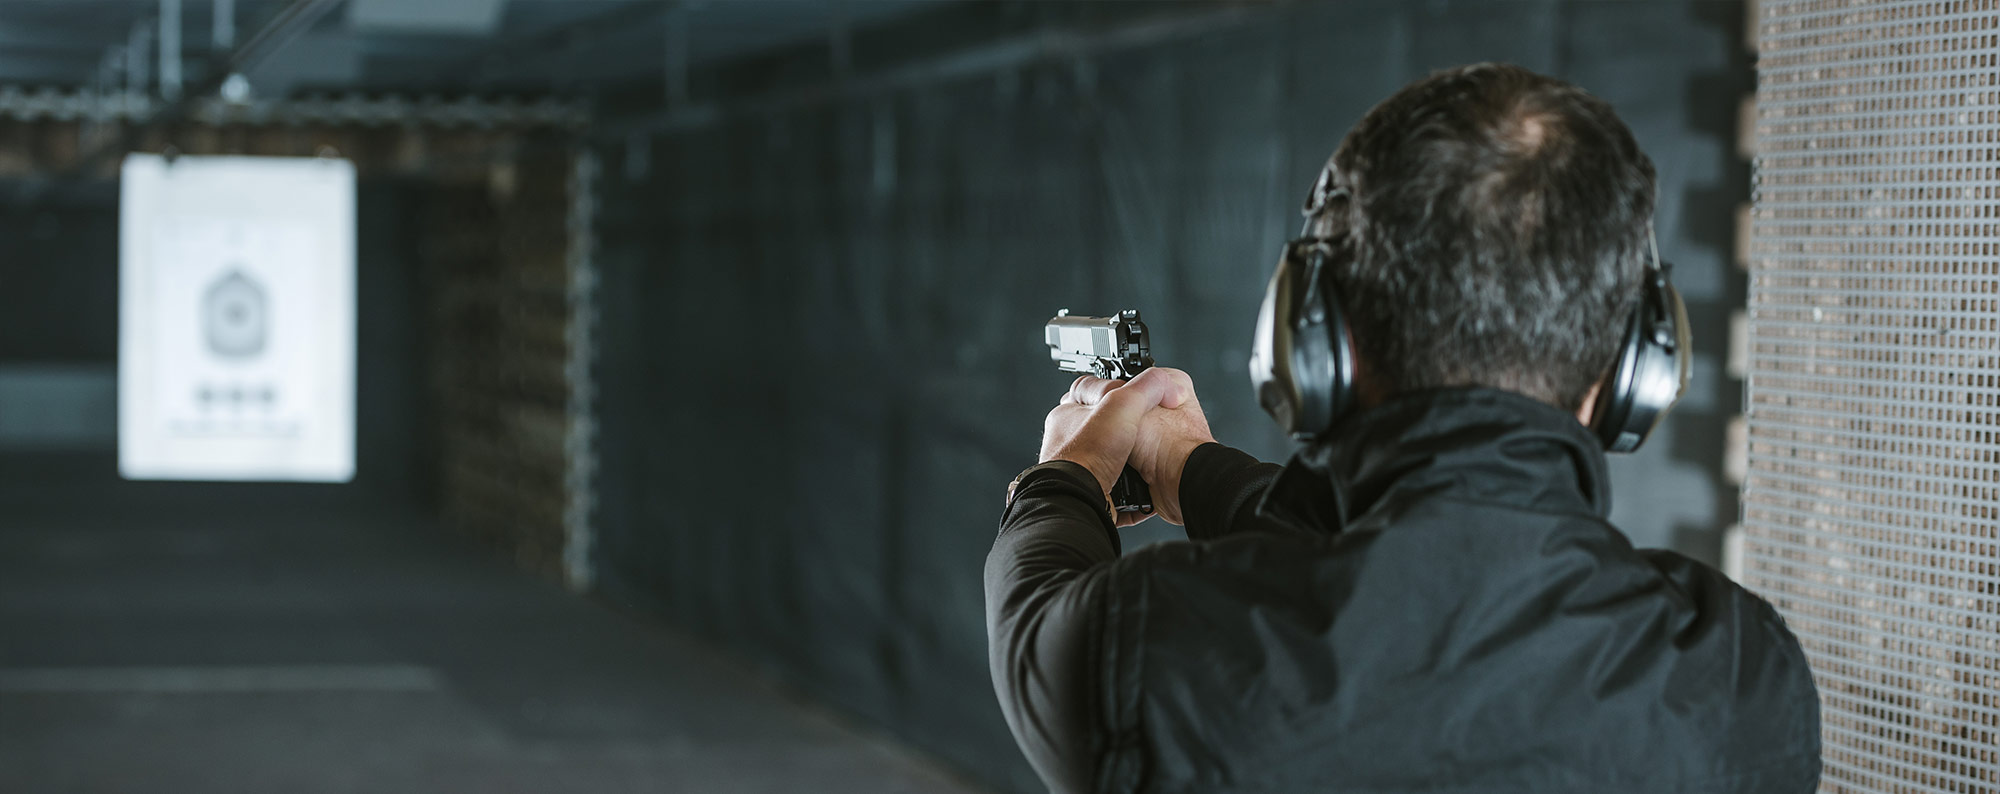 Man shooting pistol at target image